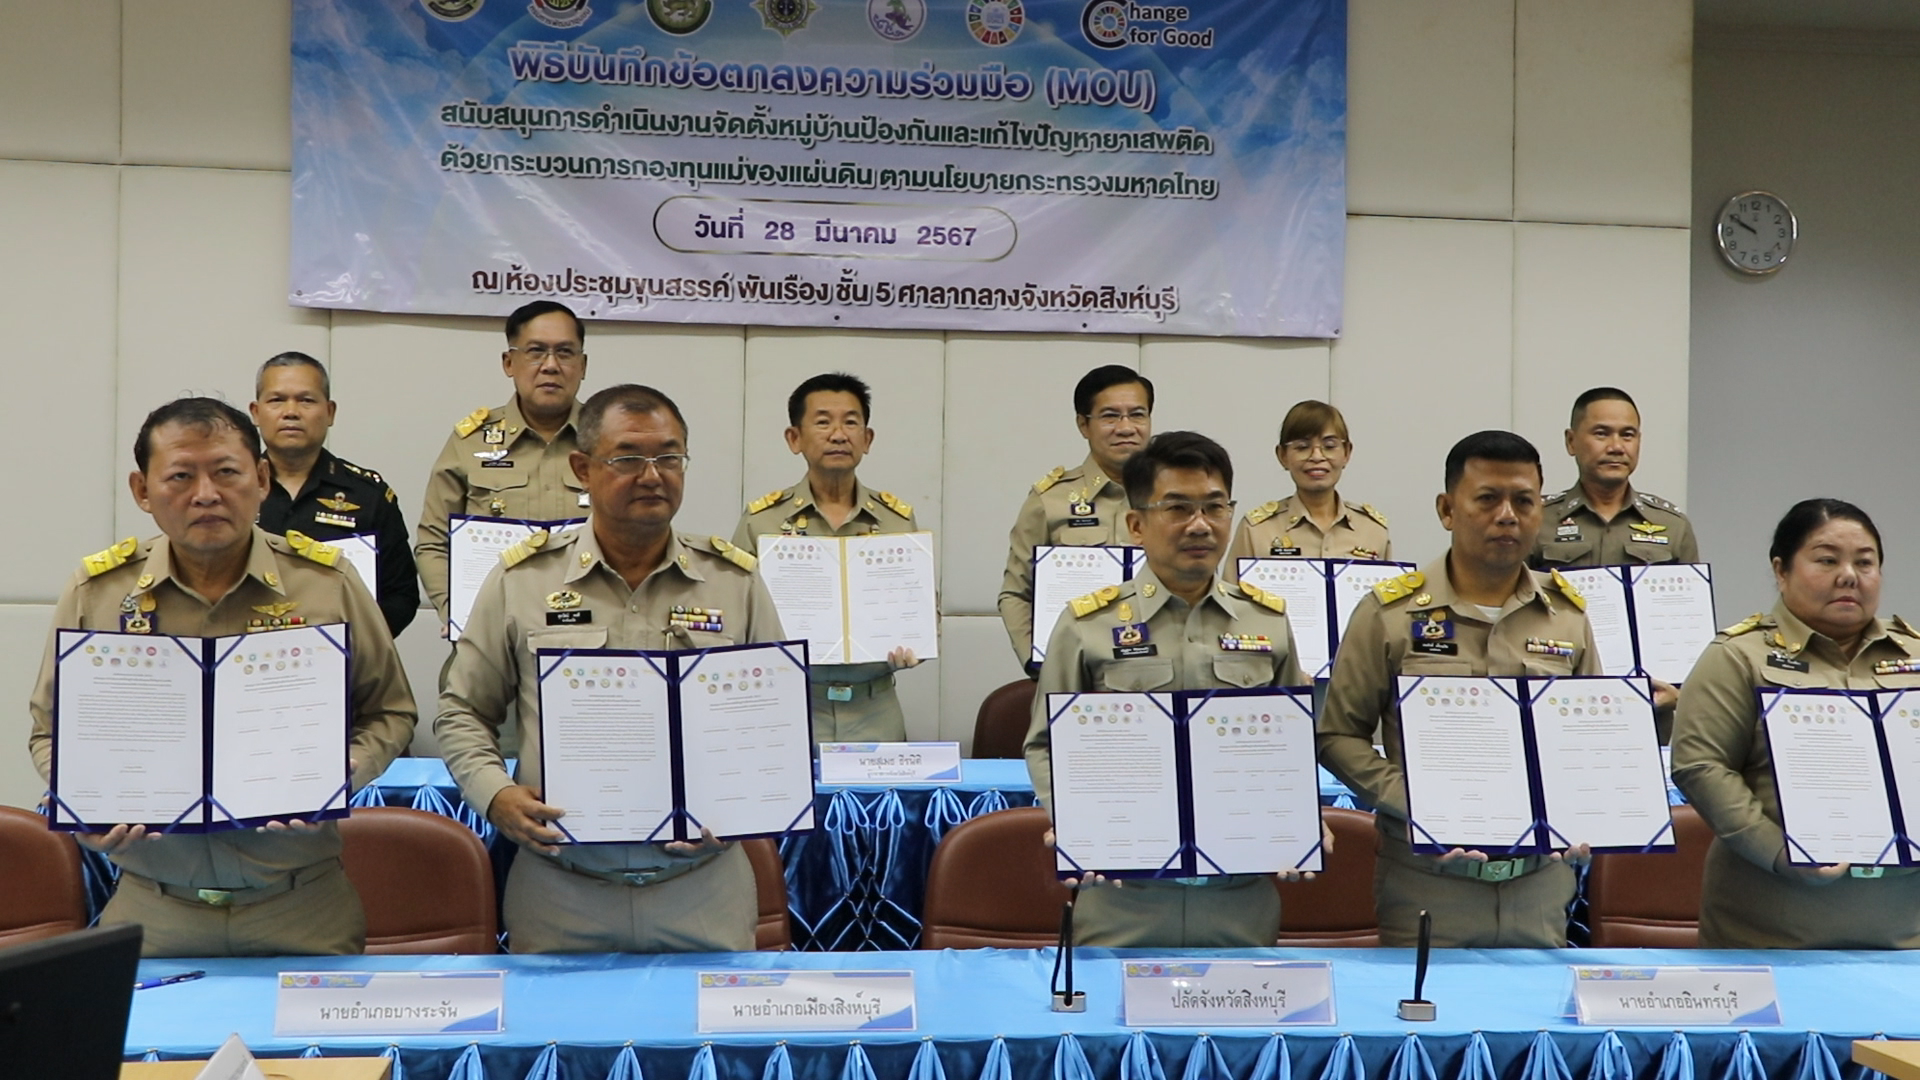 สิงห์บุรี-ลงนามประกาศป้องกันและแก้ไขปัญหายาเสพติด ตามนโยบายกระทรวงมหาดไทย